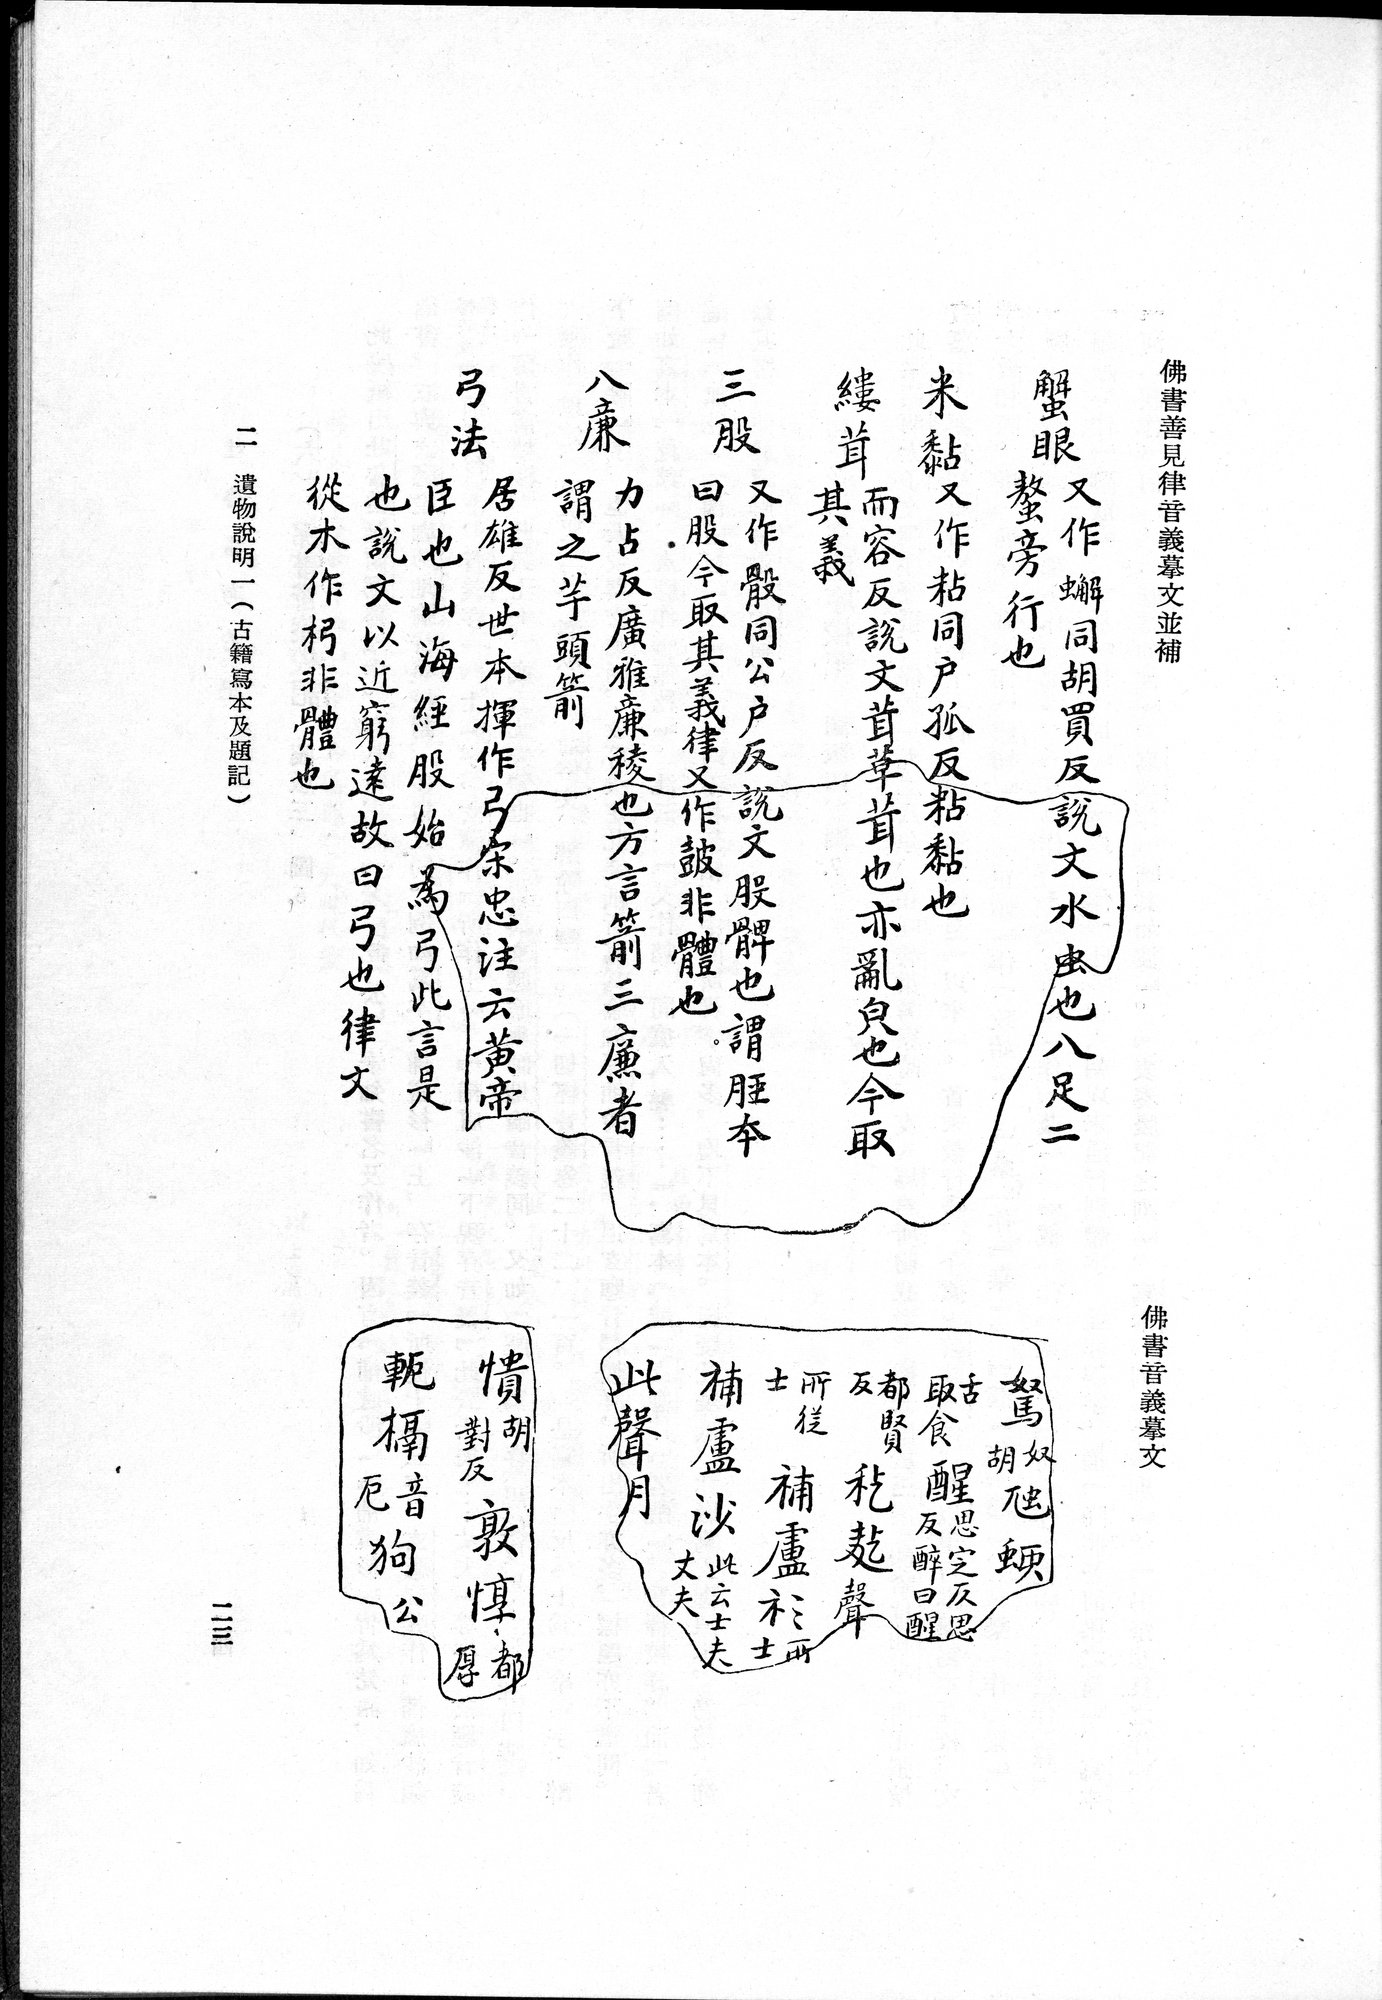 吐魯番考古記 : vol.1 / Page 49 (Grayscale High Resolution Image)